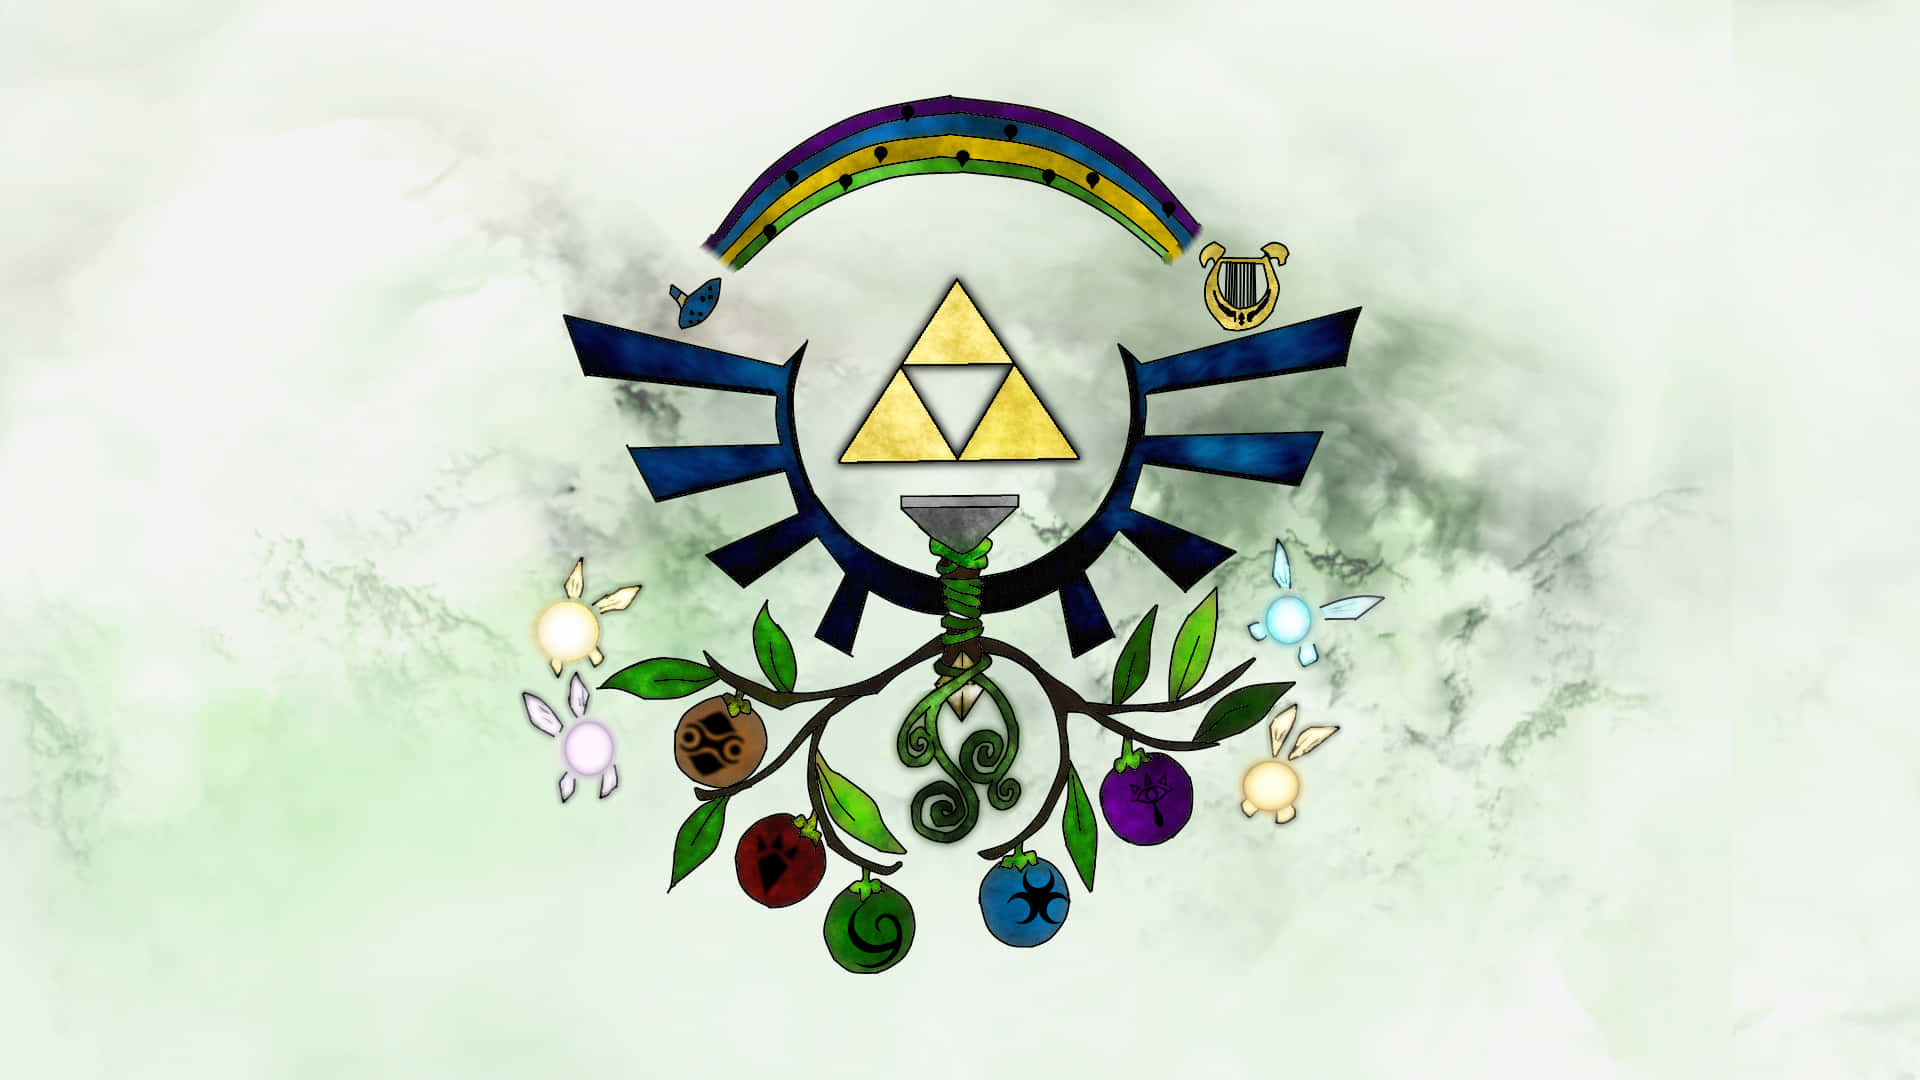 Ellogo De The Legend Of Zelda Con Un Árbol Y Un Símbolo. Fondo de pantalla